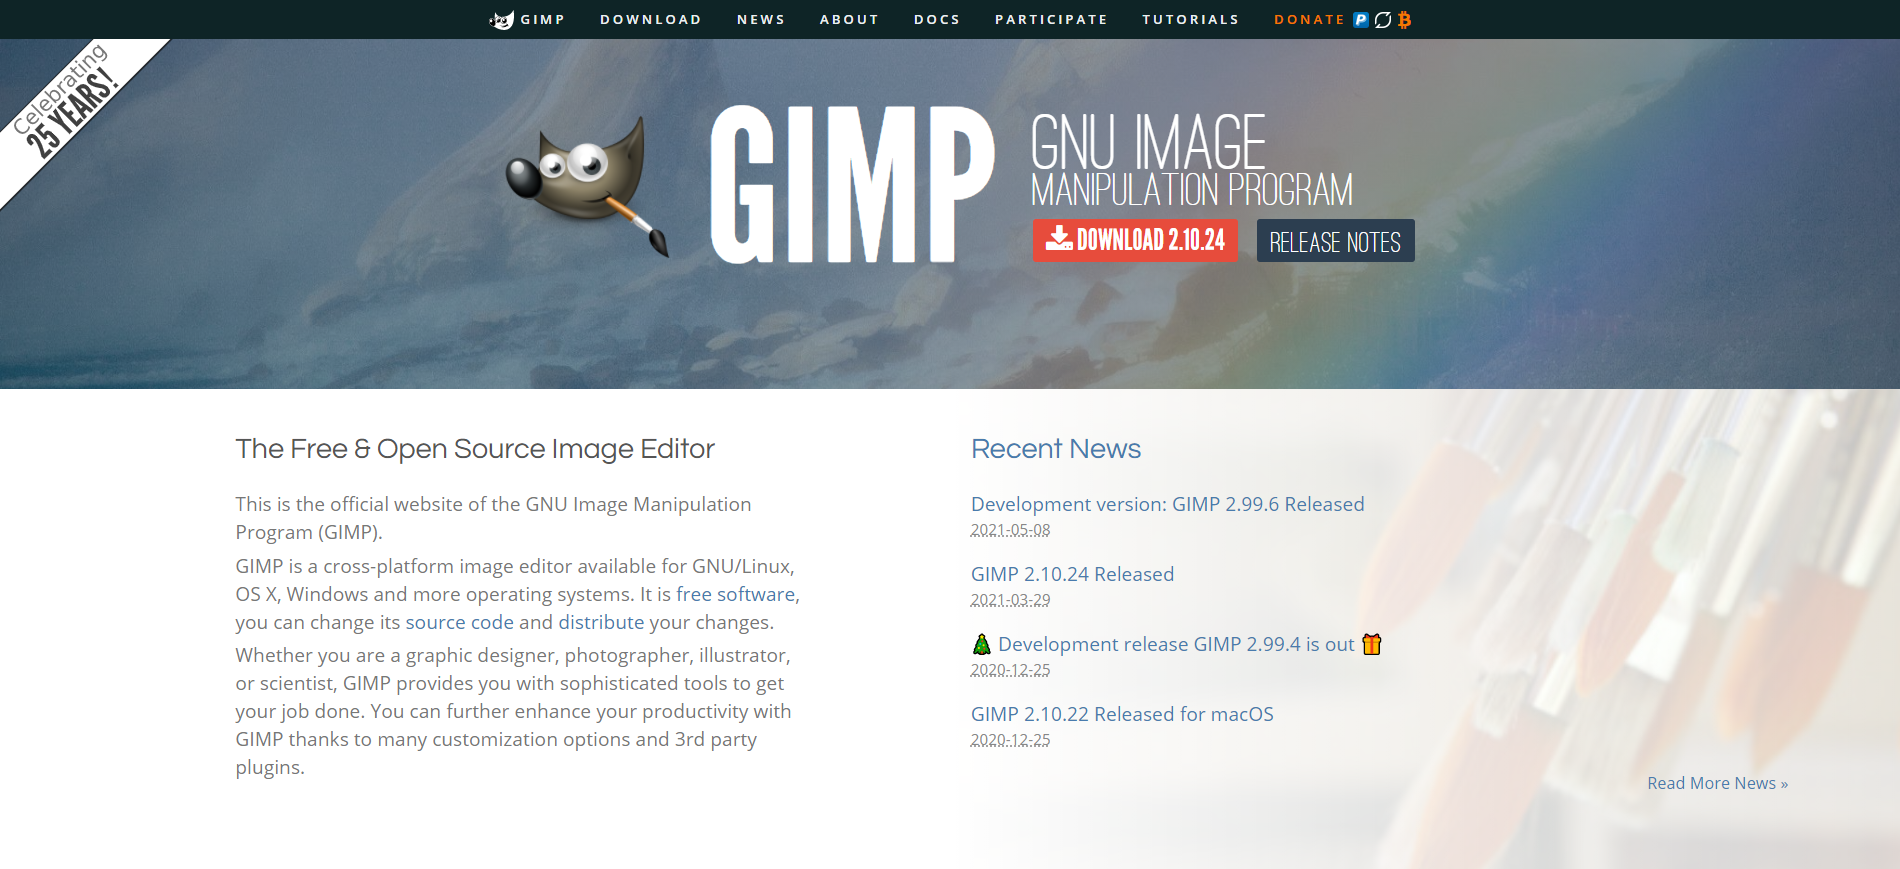 ペイント系ソフト「GIMP」